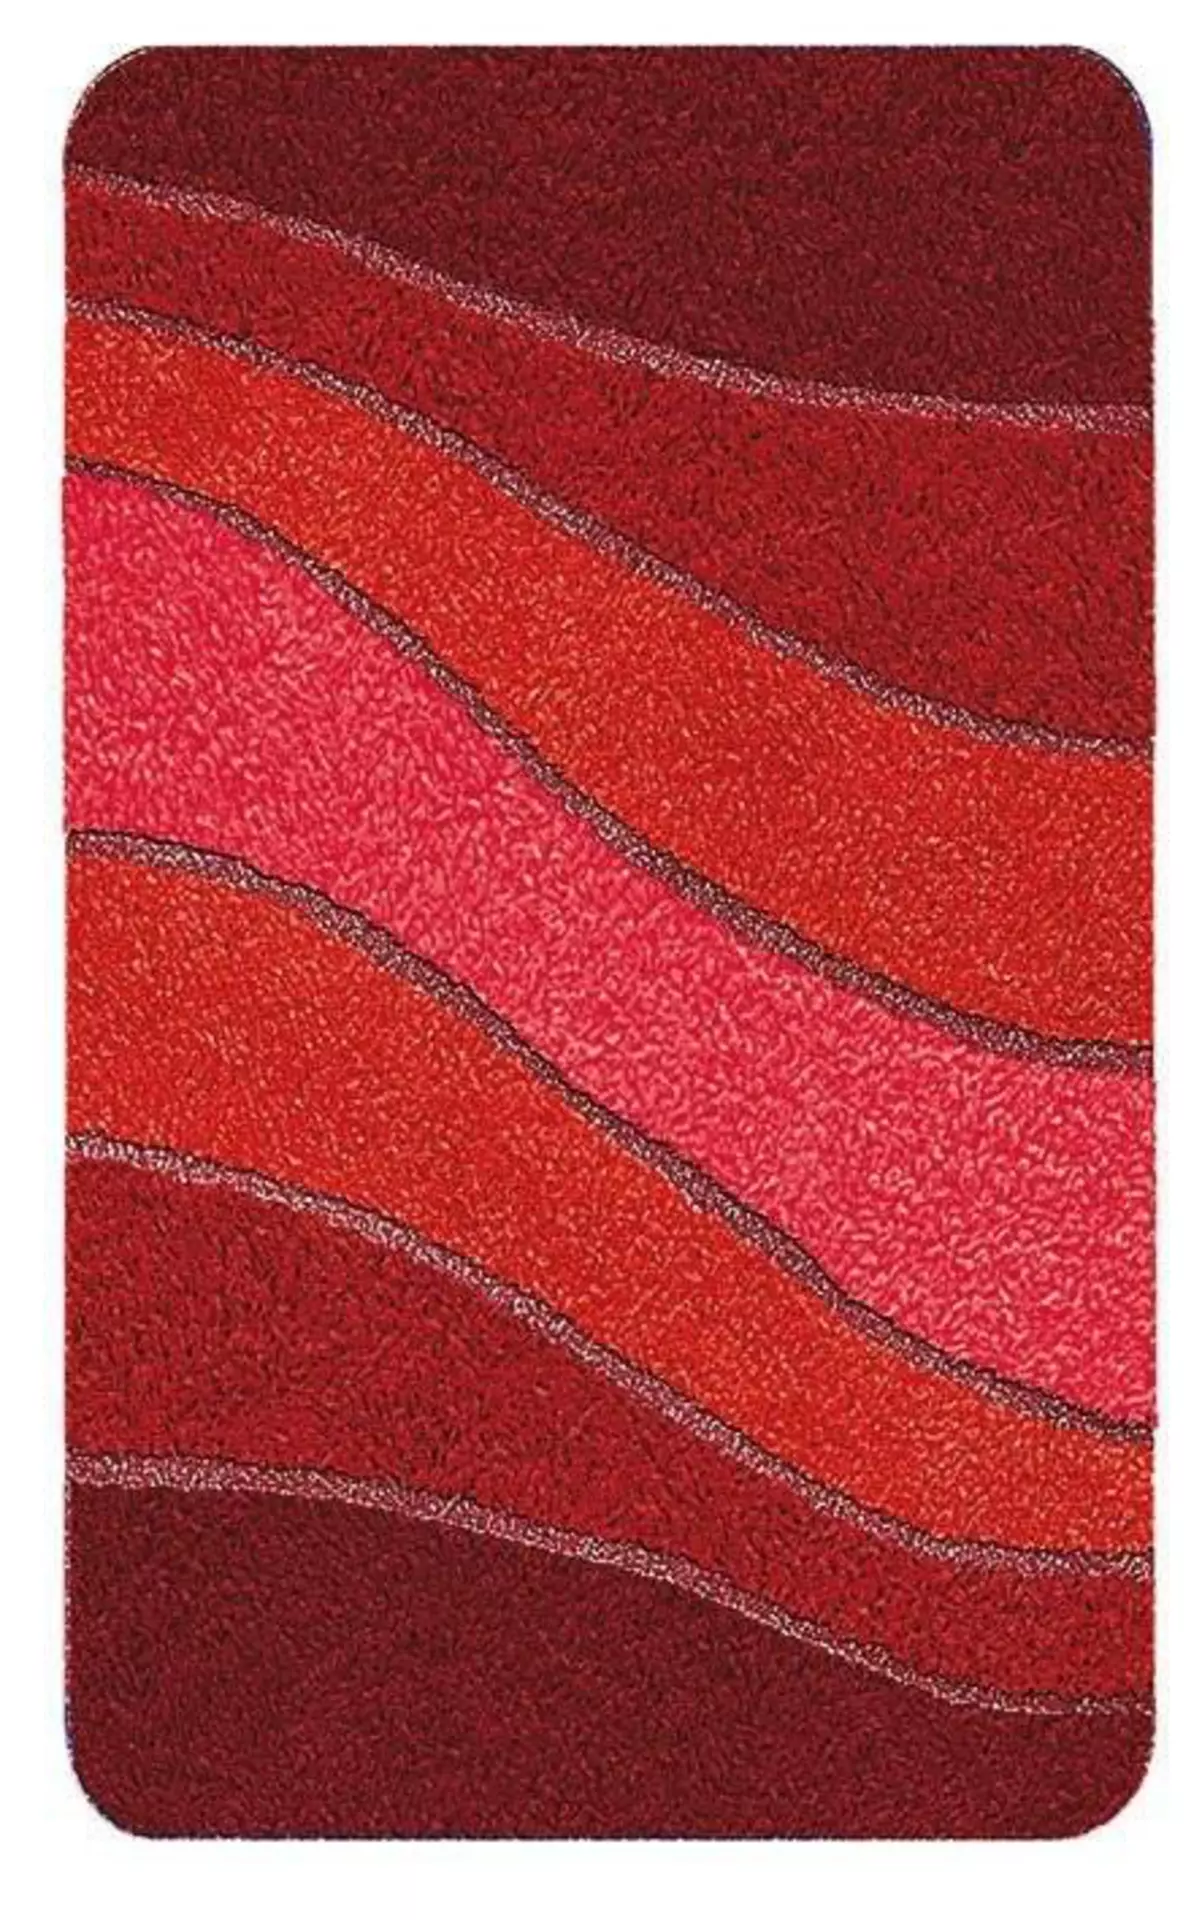 Badteppich Ocean Meusch Textil 150 x 2 x 80 cm